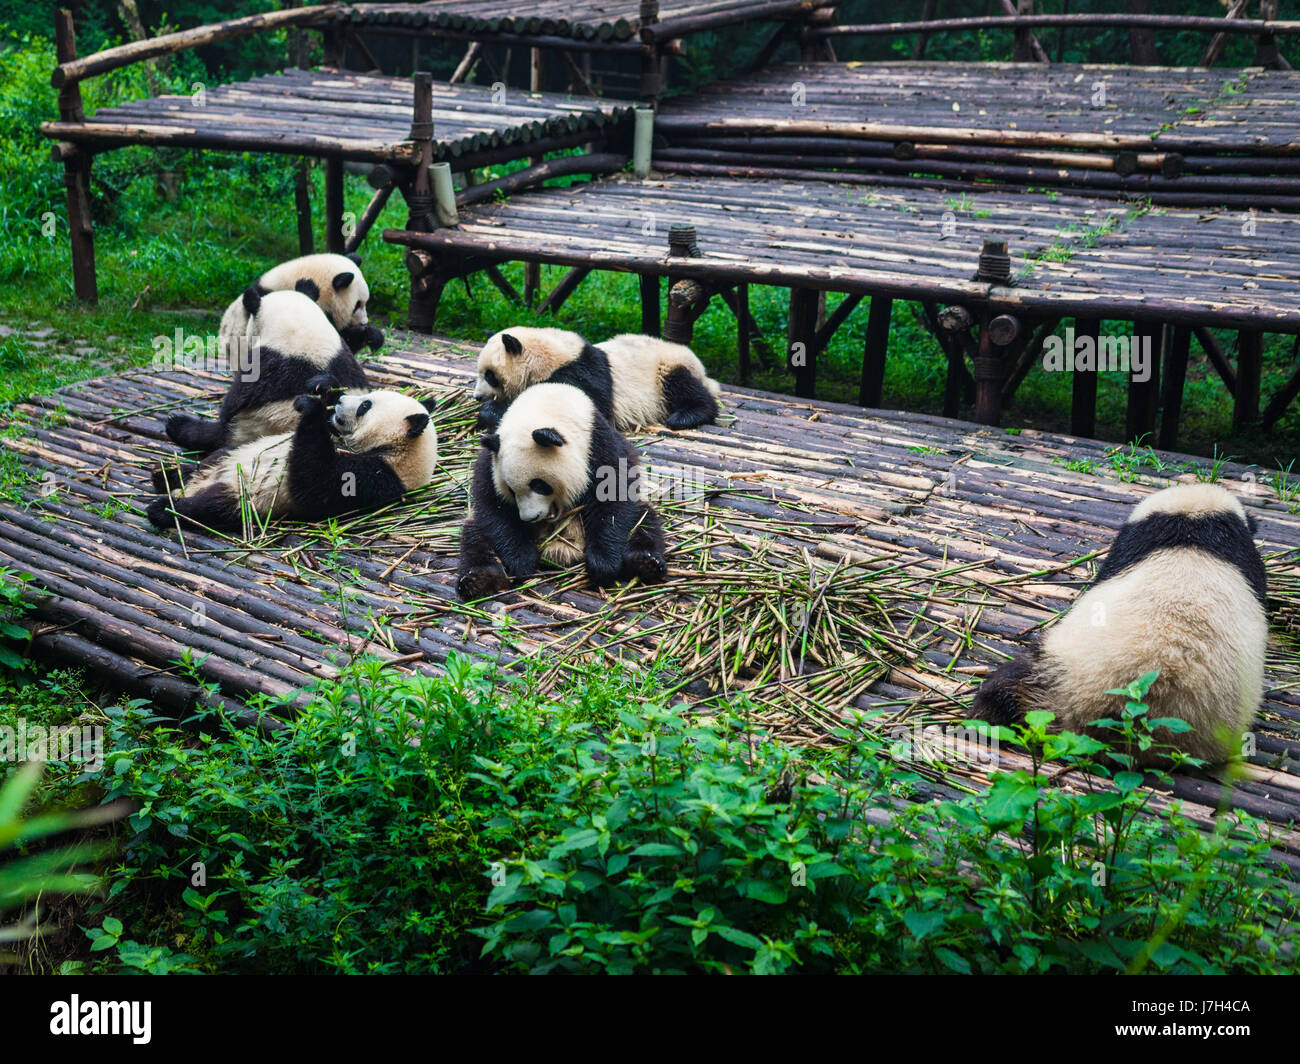 Panda gigante può essere visto aventi la loro colazione consistente di bambù. Il Chengdu Research Base del Panda Gigante allevamento è una riserva per la Foto Stock